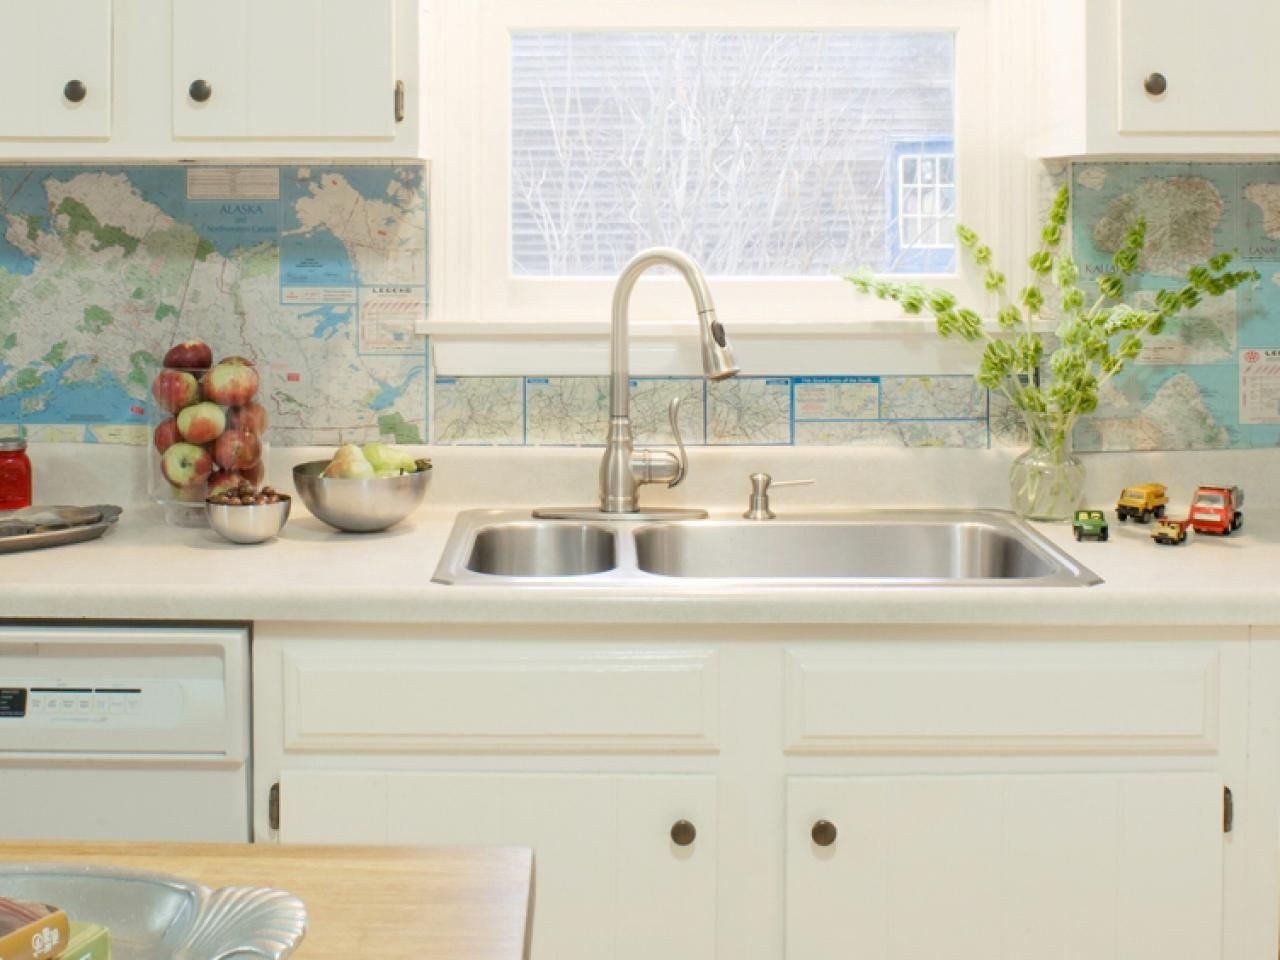 Best ideas about Kitchen Backsplash DIY
. Save or Pin Top 20 DIY Kitchen Backsplash Ideas Now.